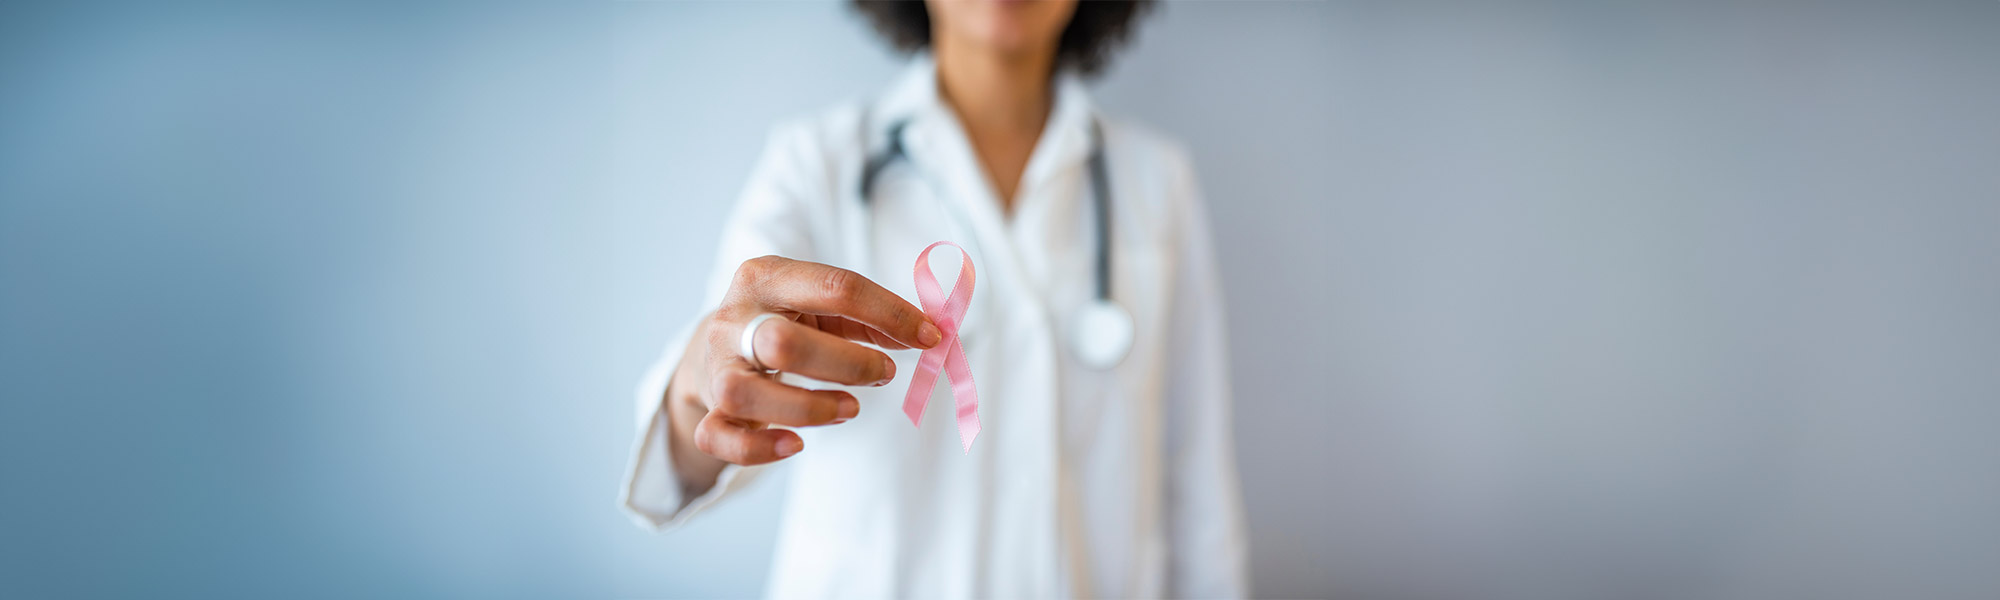 medico donna con in mano fiocco rosa simbolo della lotta contro i tumori al seno. Fondazione della Comunità Bresciana